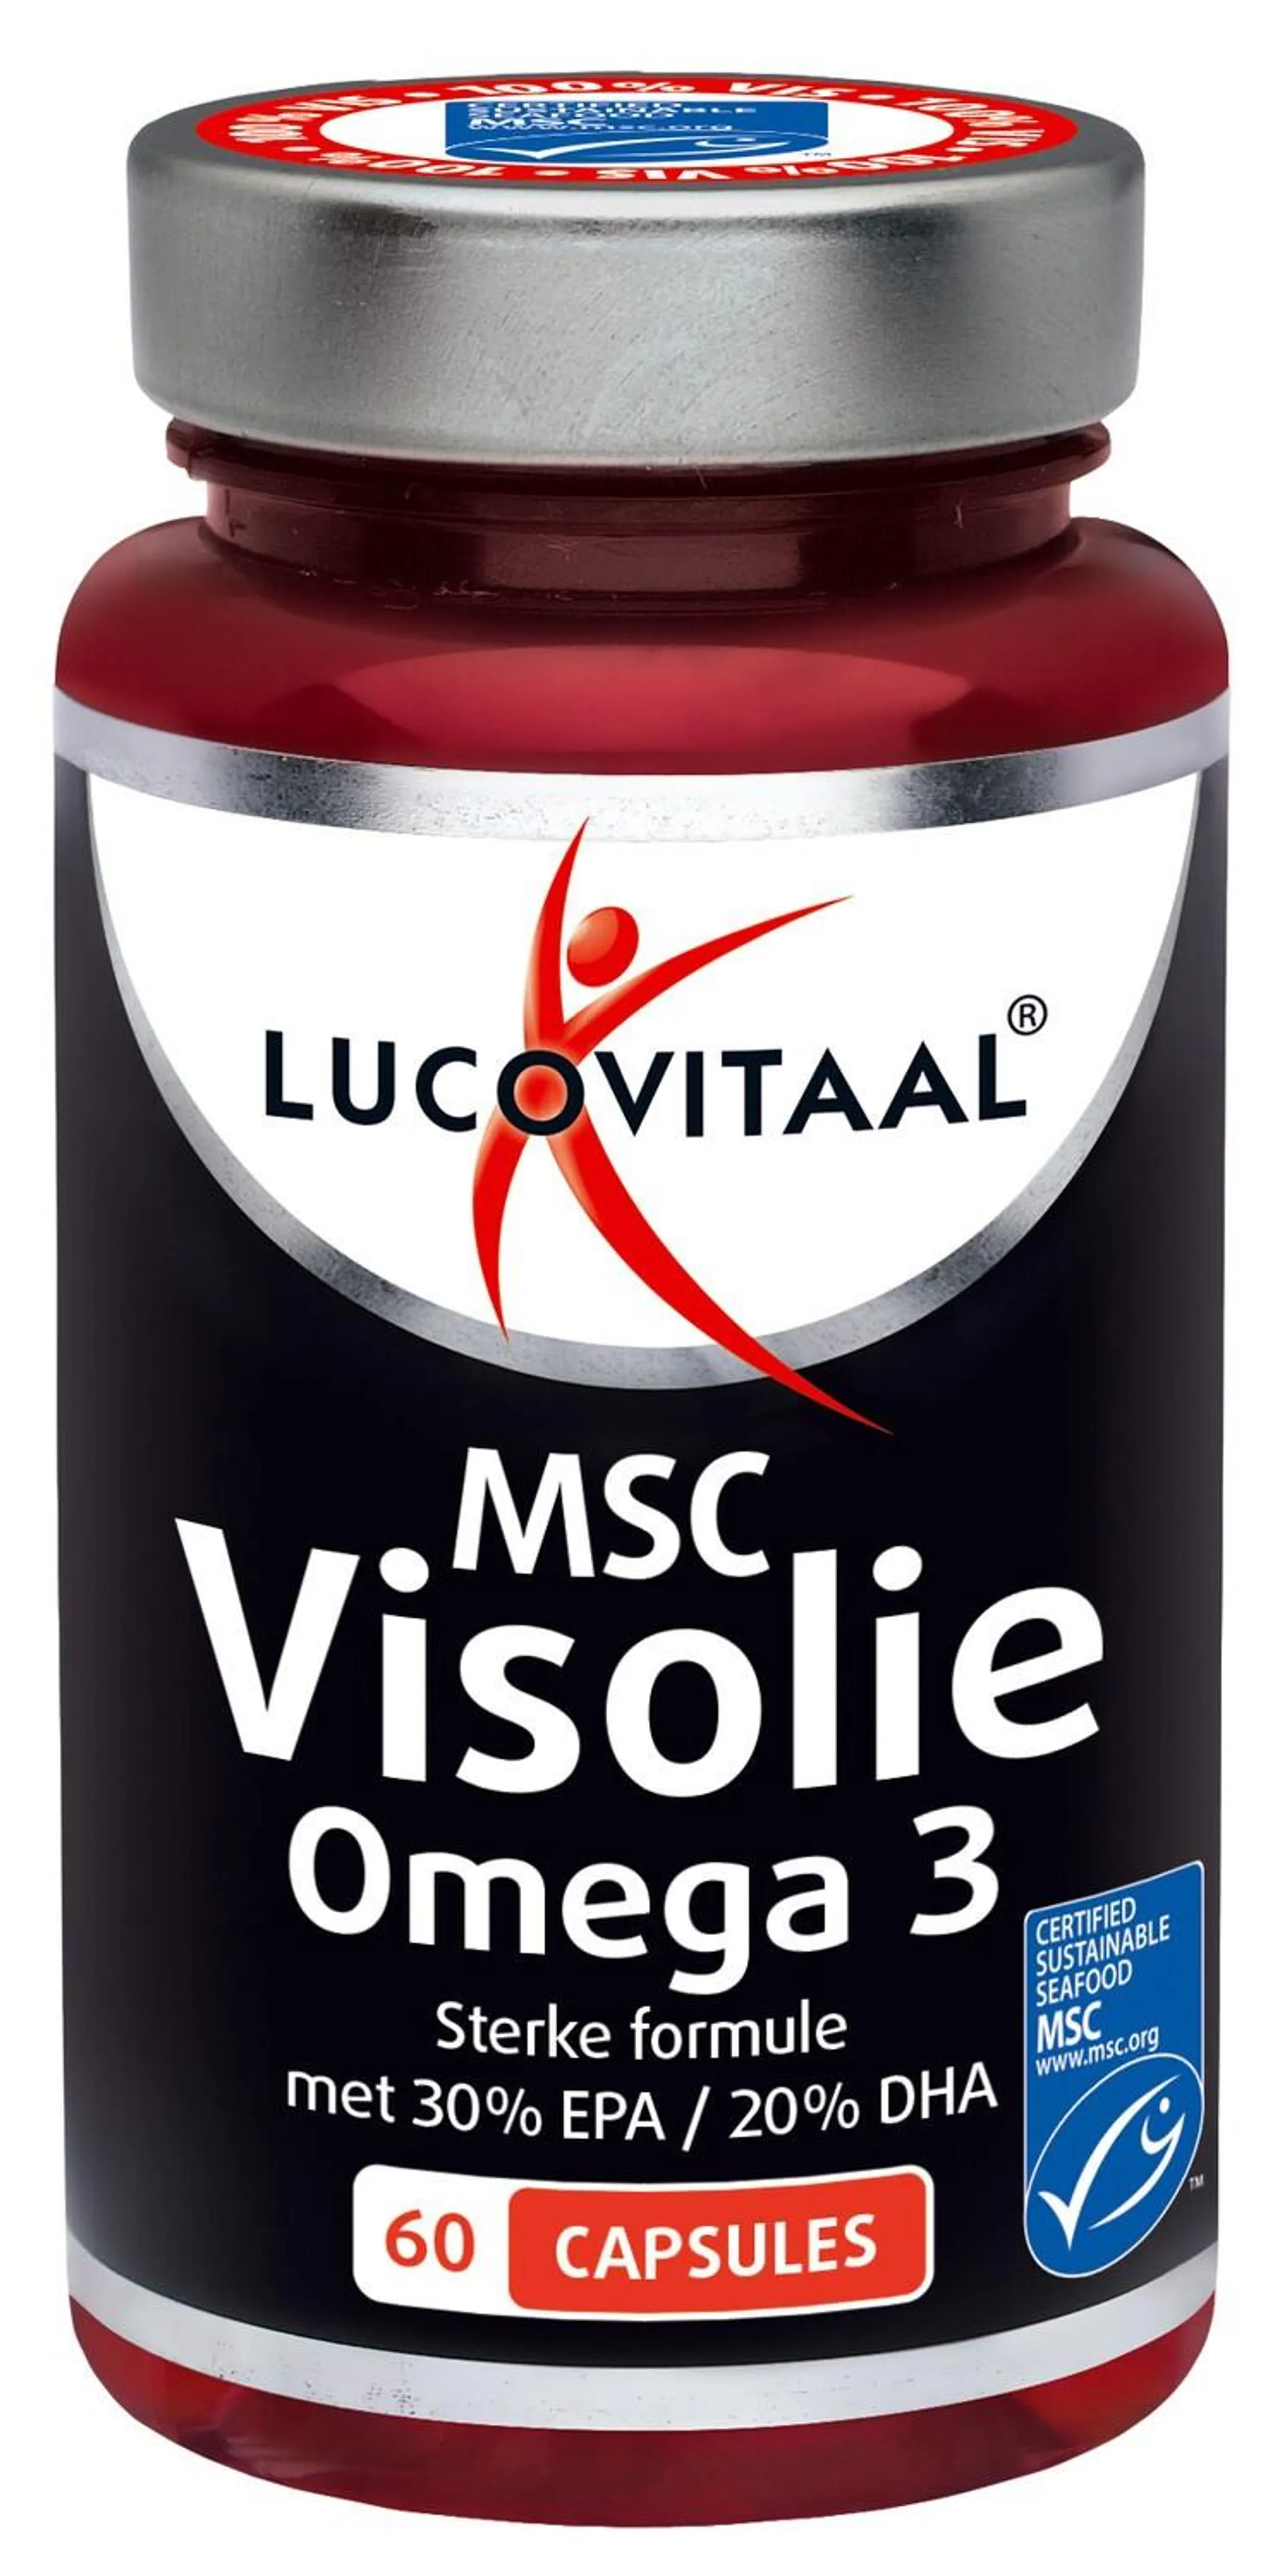 Lucovitaal MSC visolie omega 3 60 capsules